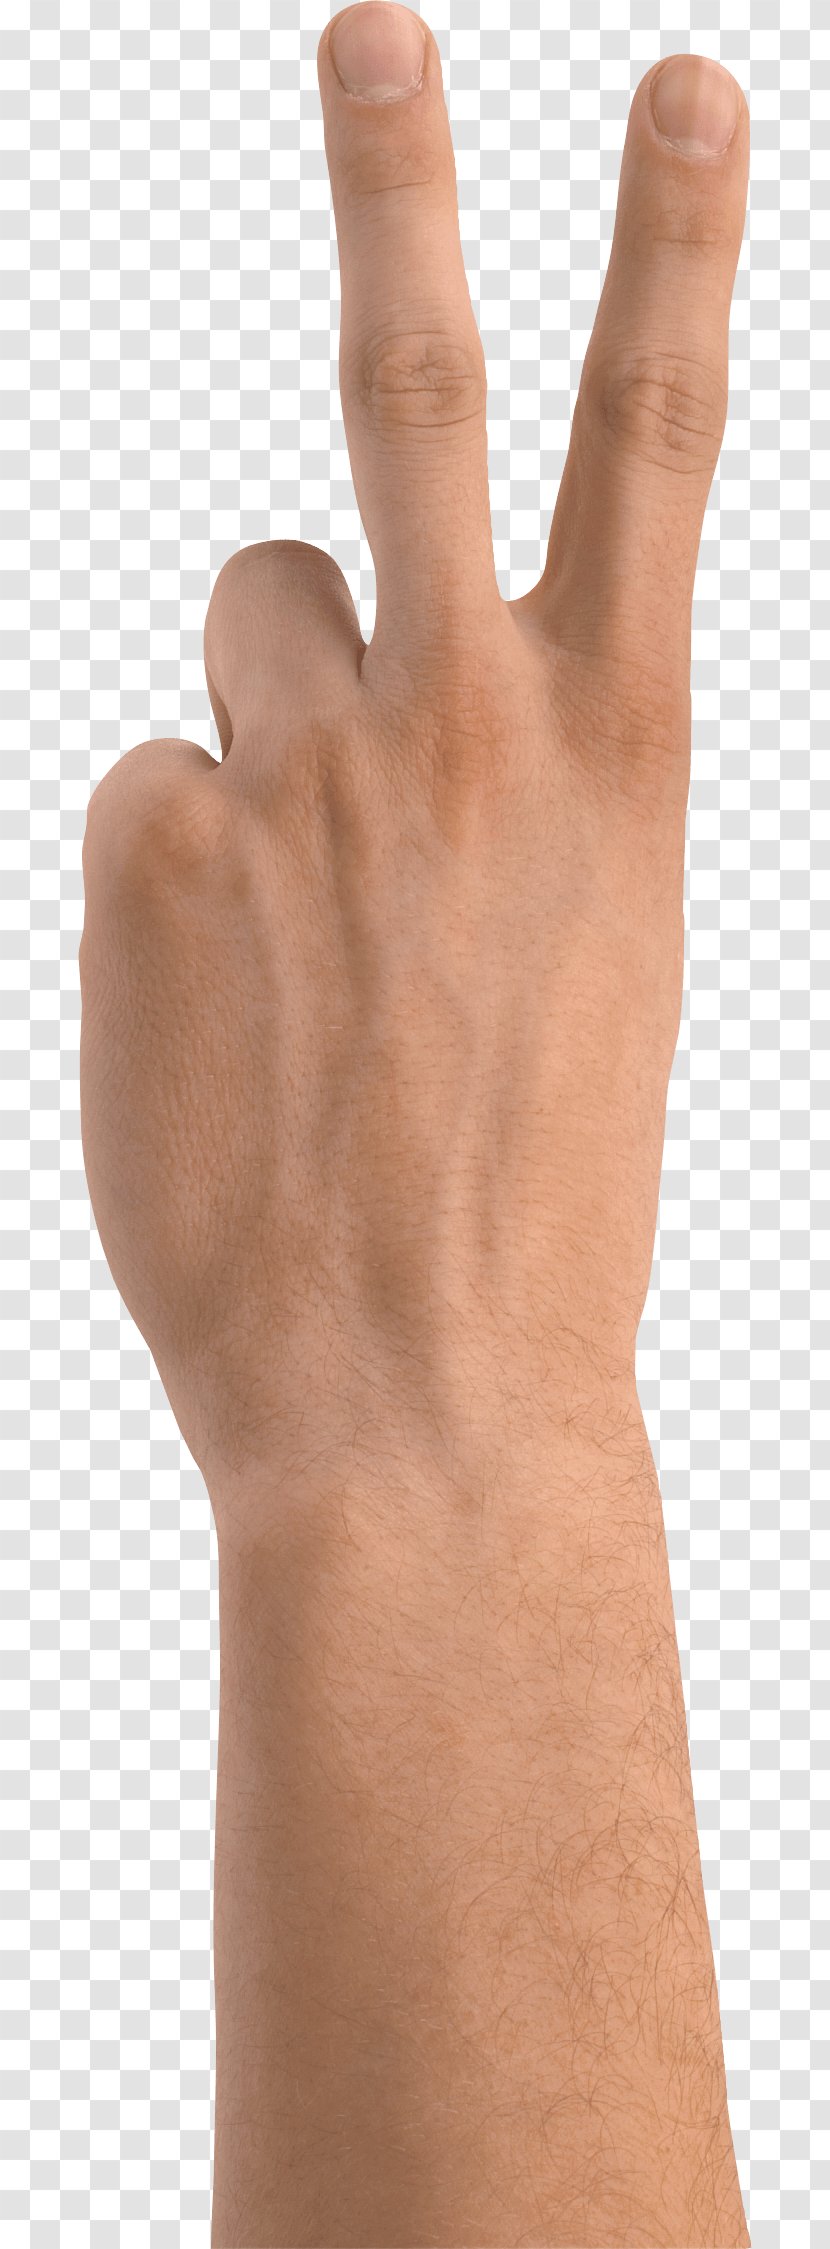 Hand Gesture - Wrist - Hands Image Transparent PNG